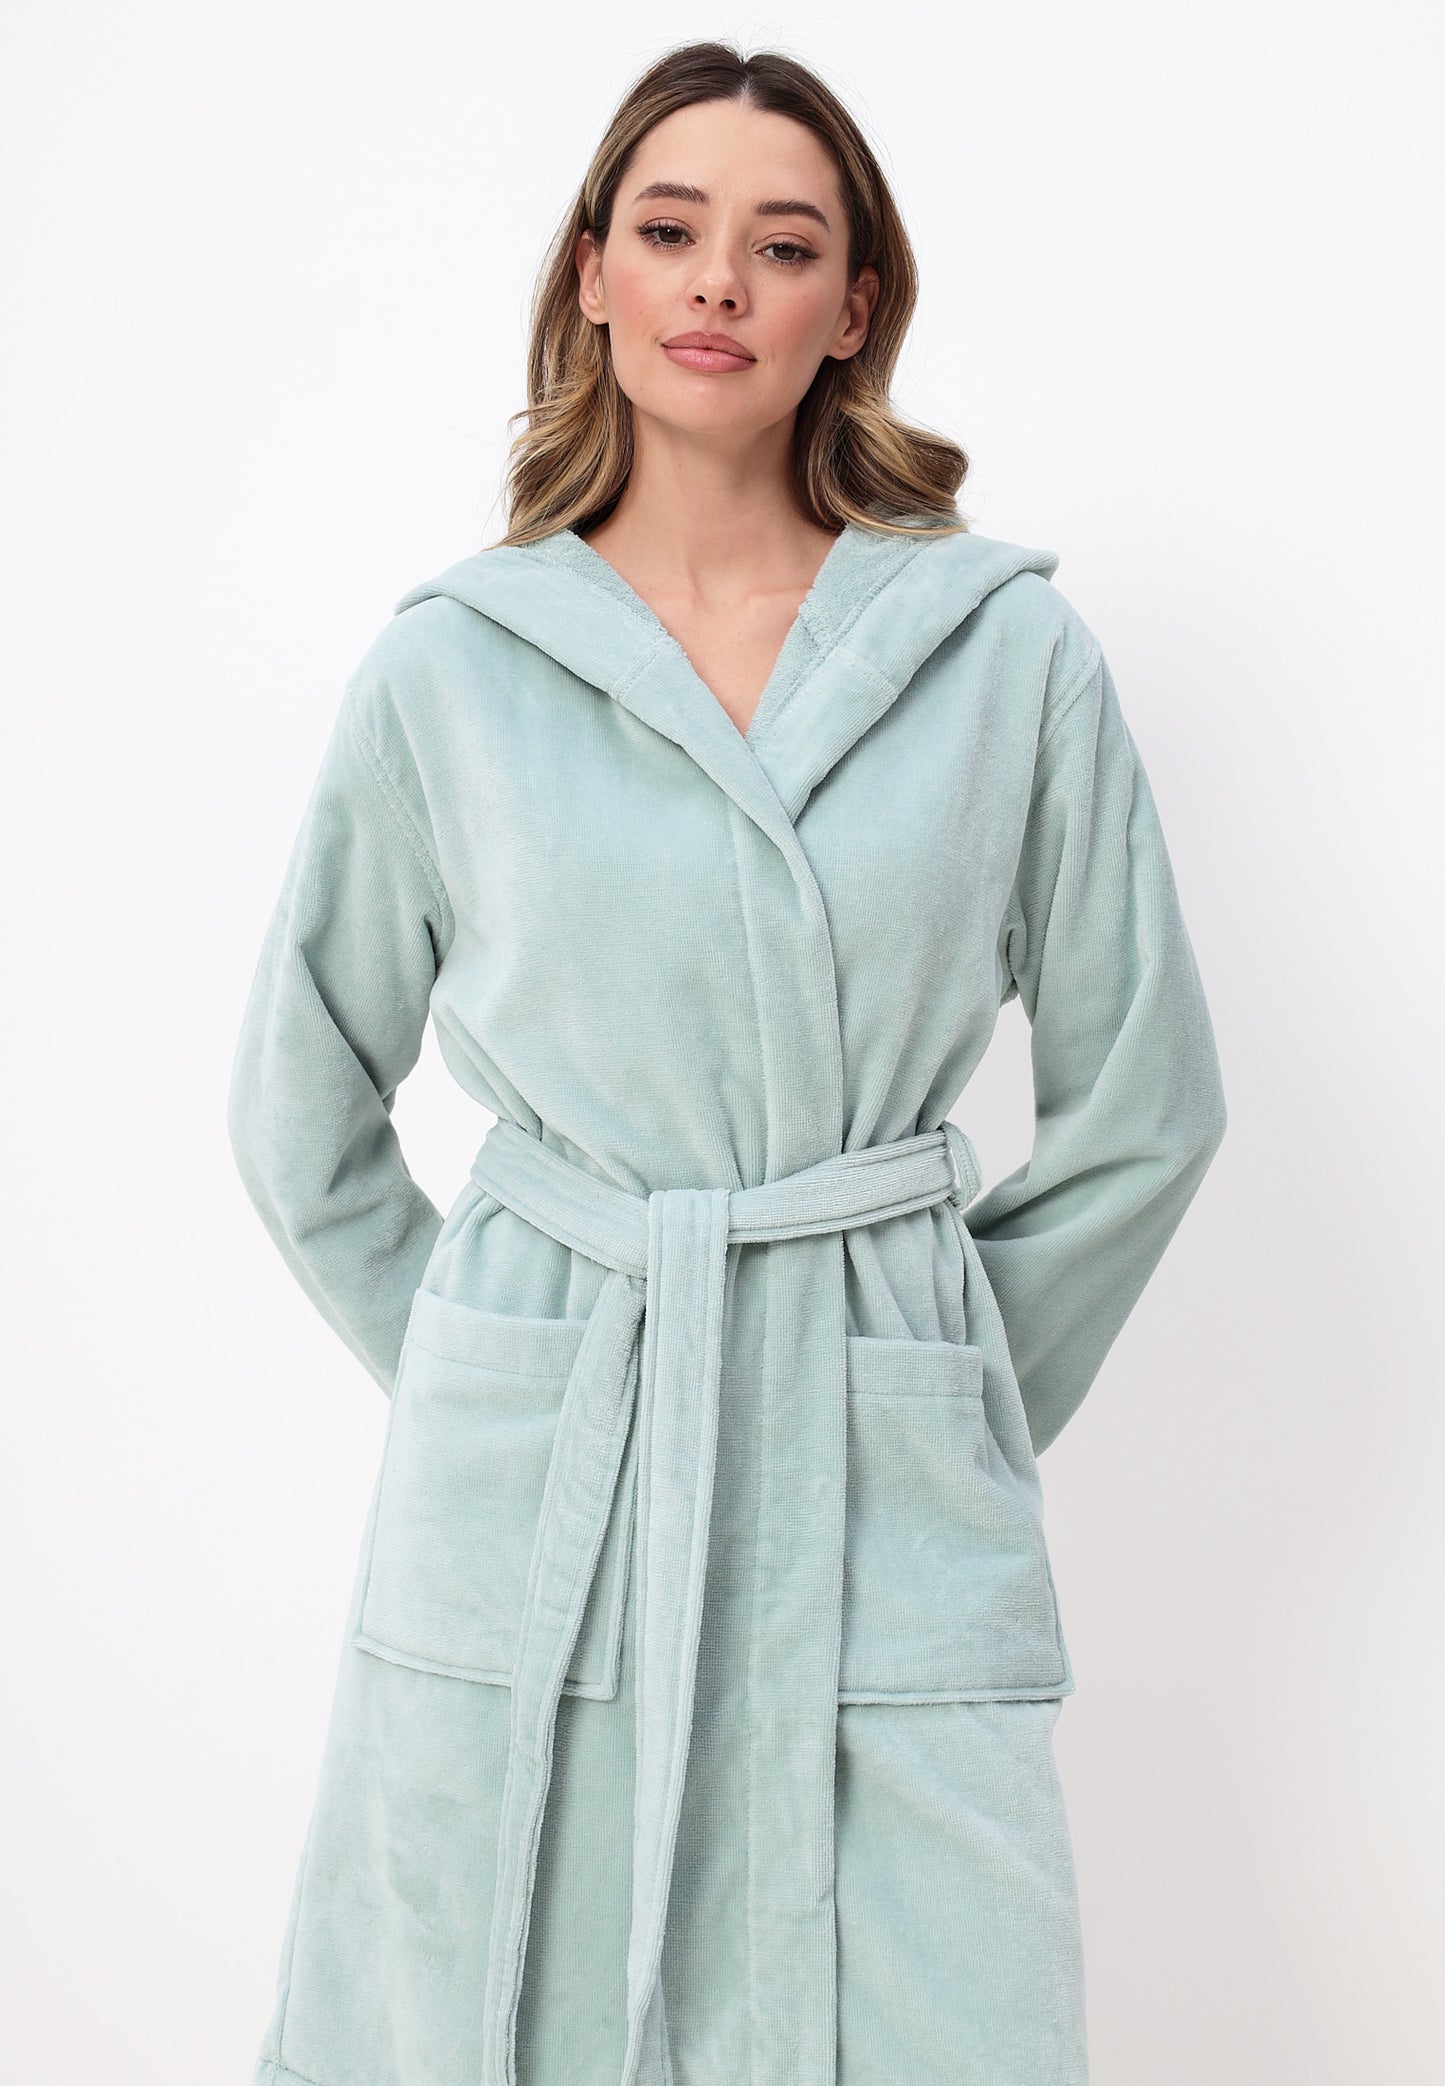 Damen Bademantel mit Kapuze aus 100% Baumwolle in Velour Design LMS-6351 Grau